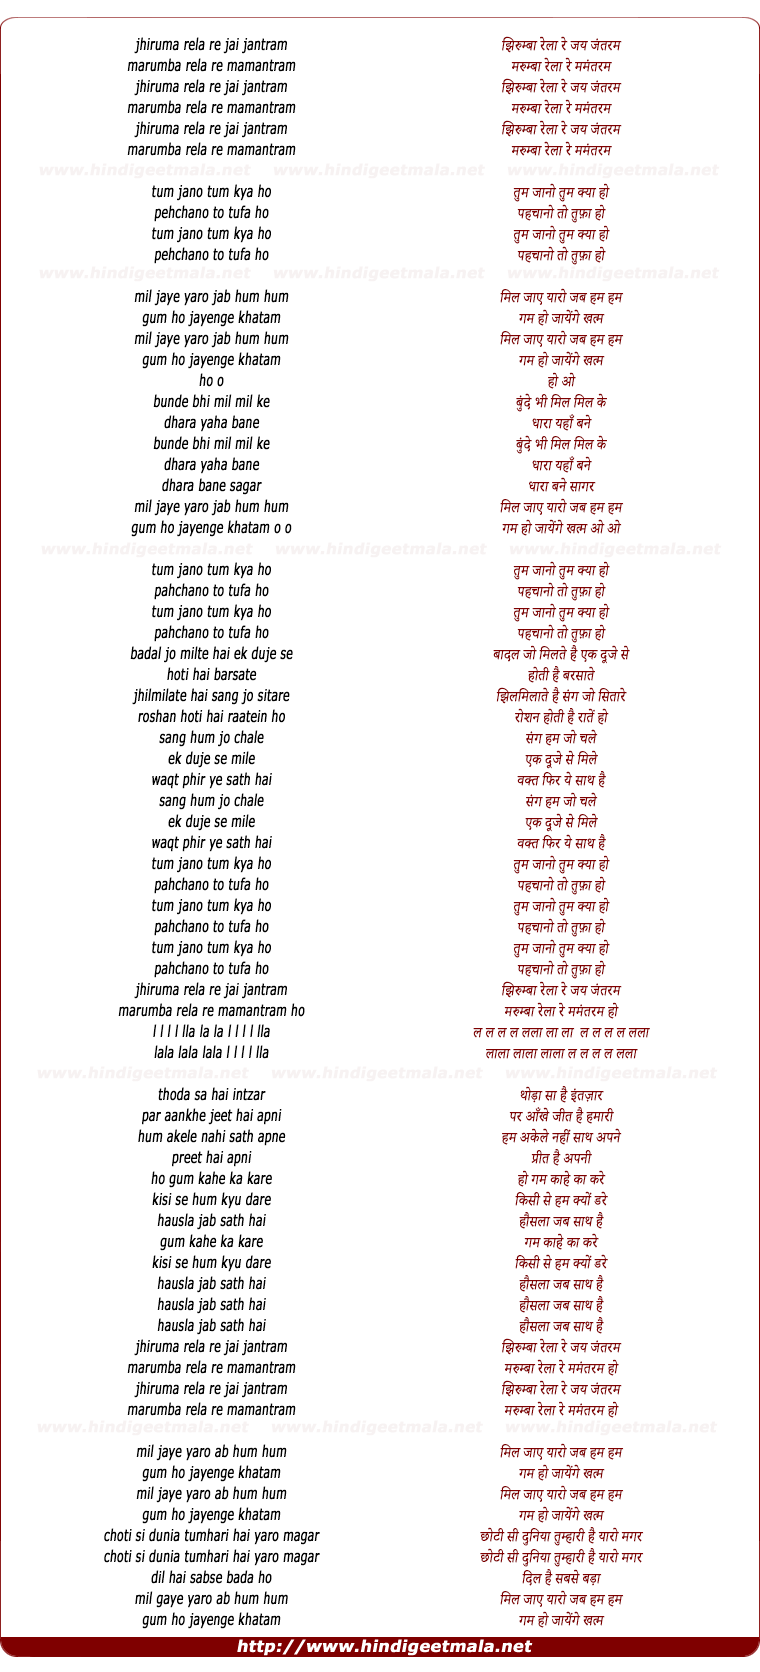 lyrics of song Jhirumba Rela Re